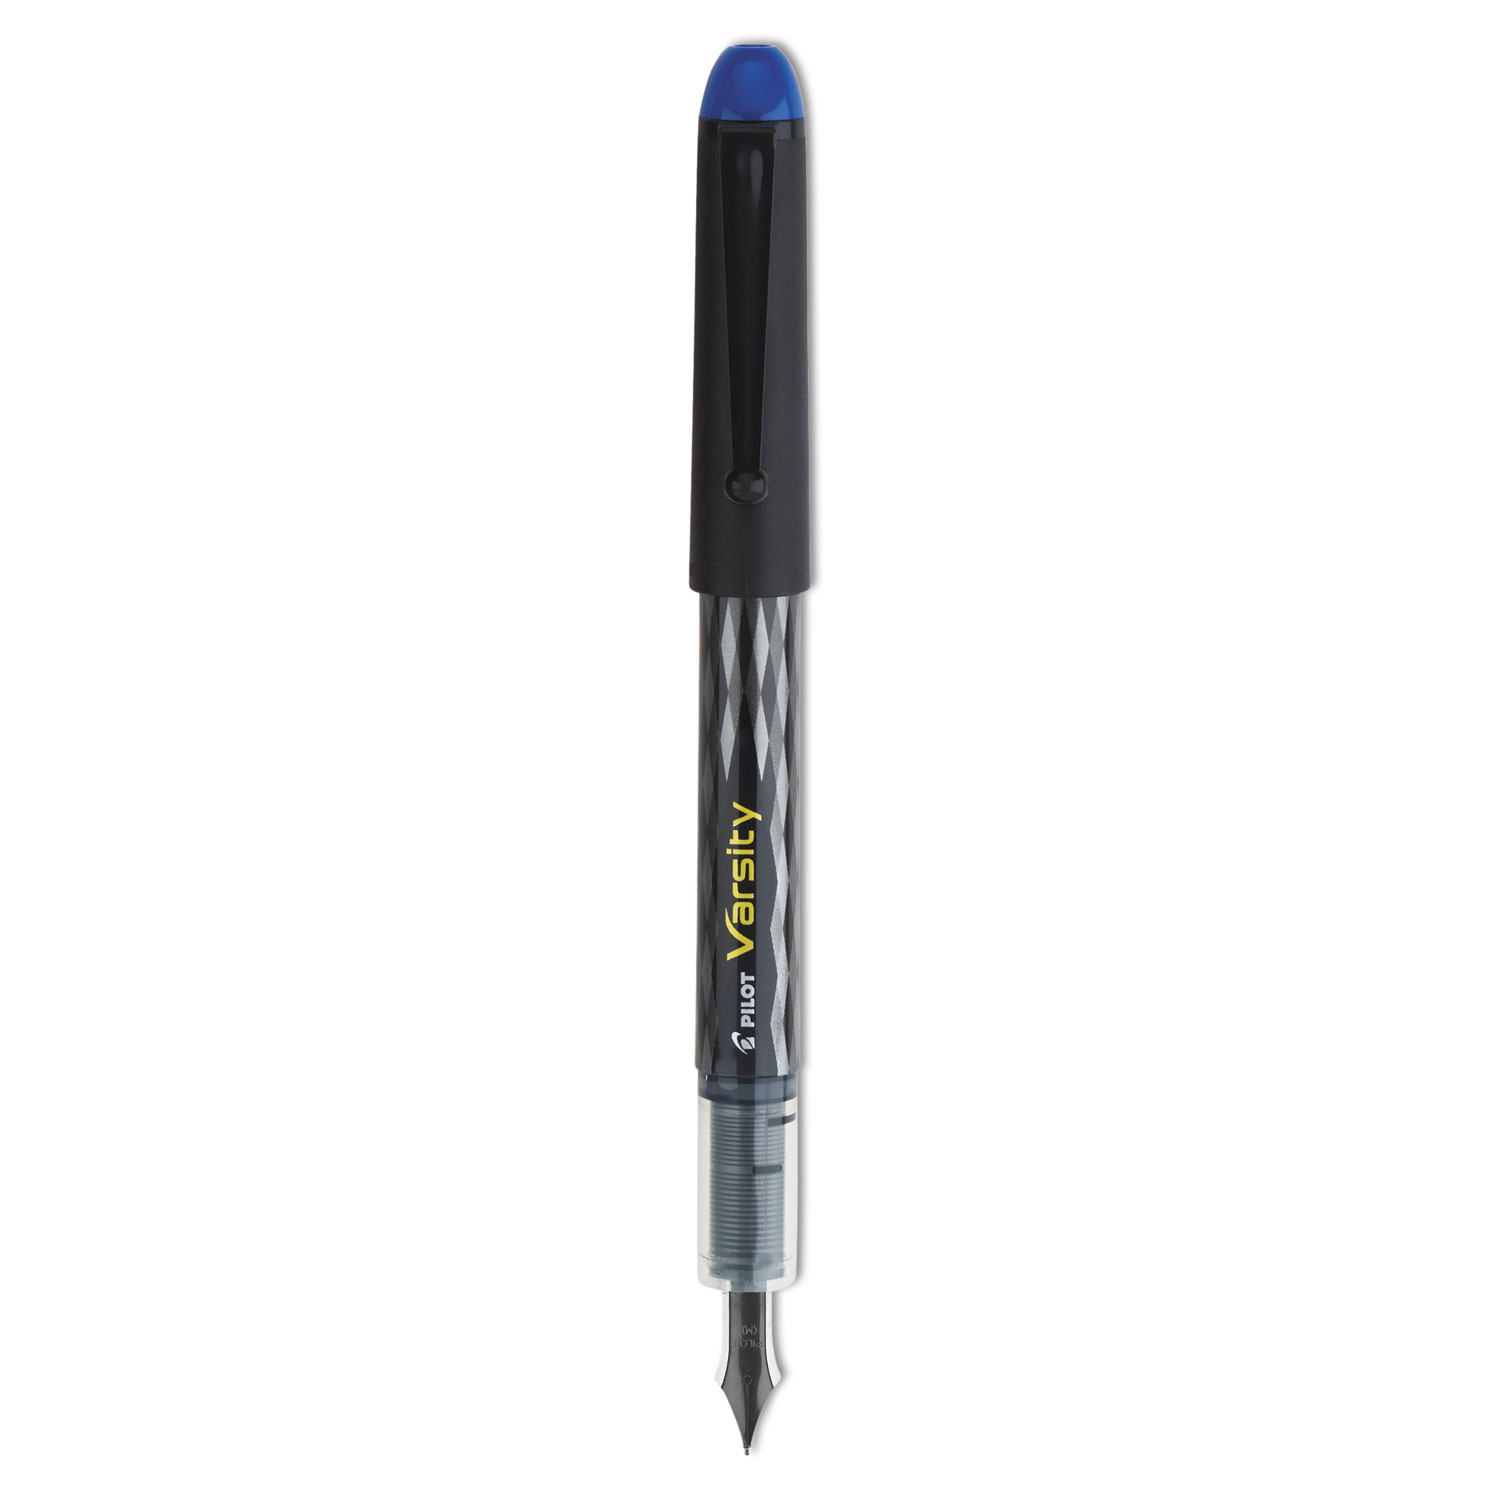 Varsity Fountain Pen, Medium 1mm, Blue Ink, Gray Pattern Wrap Barrel